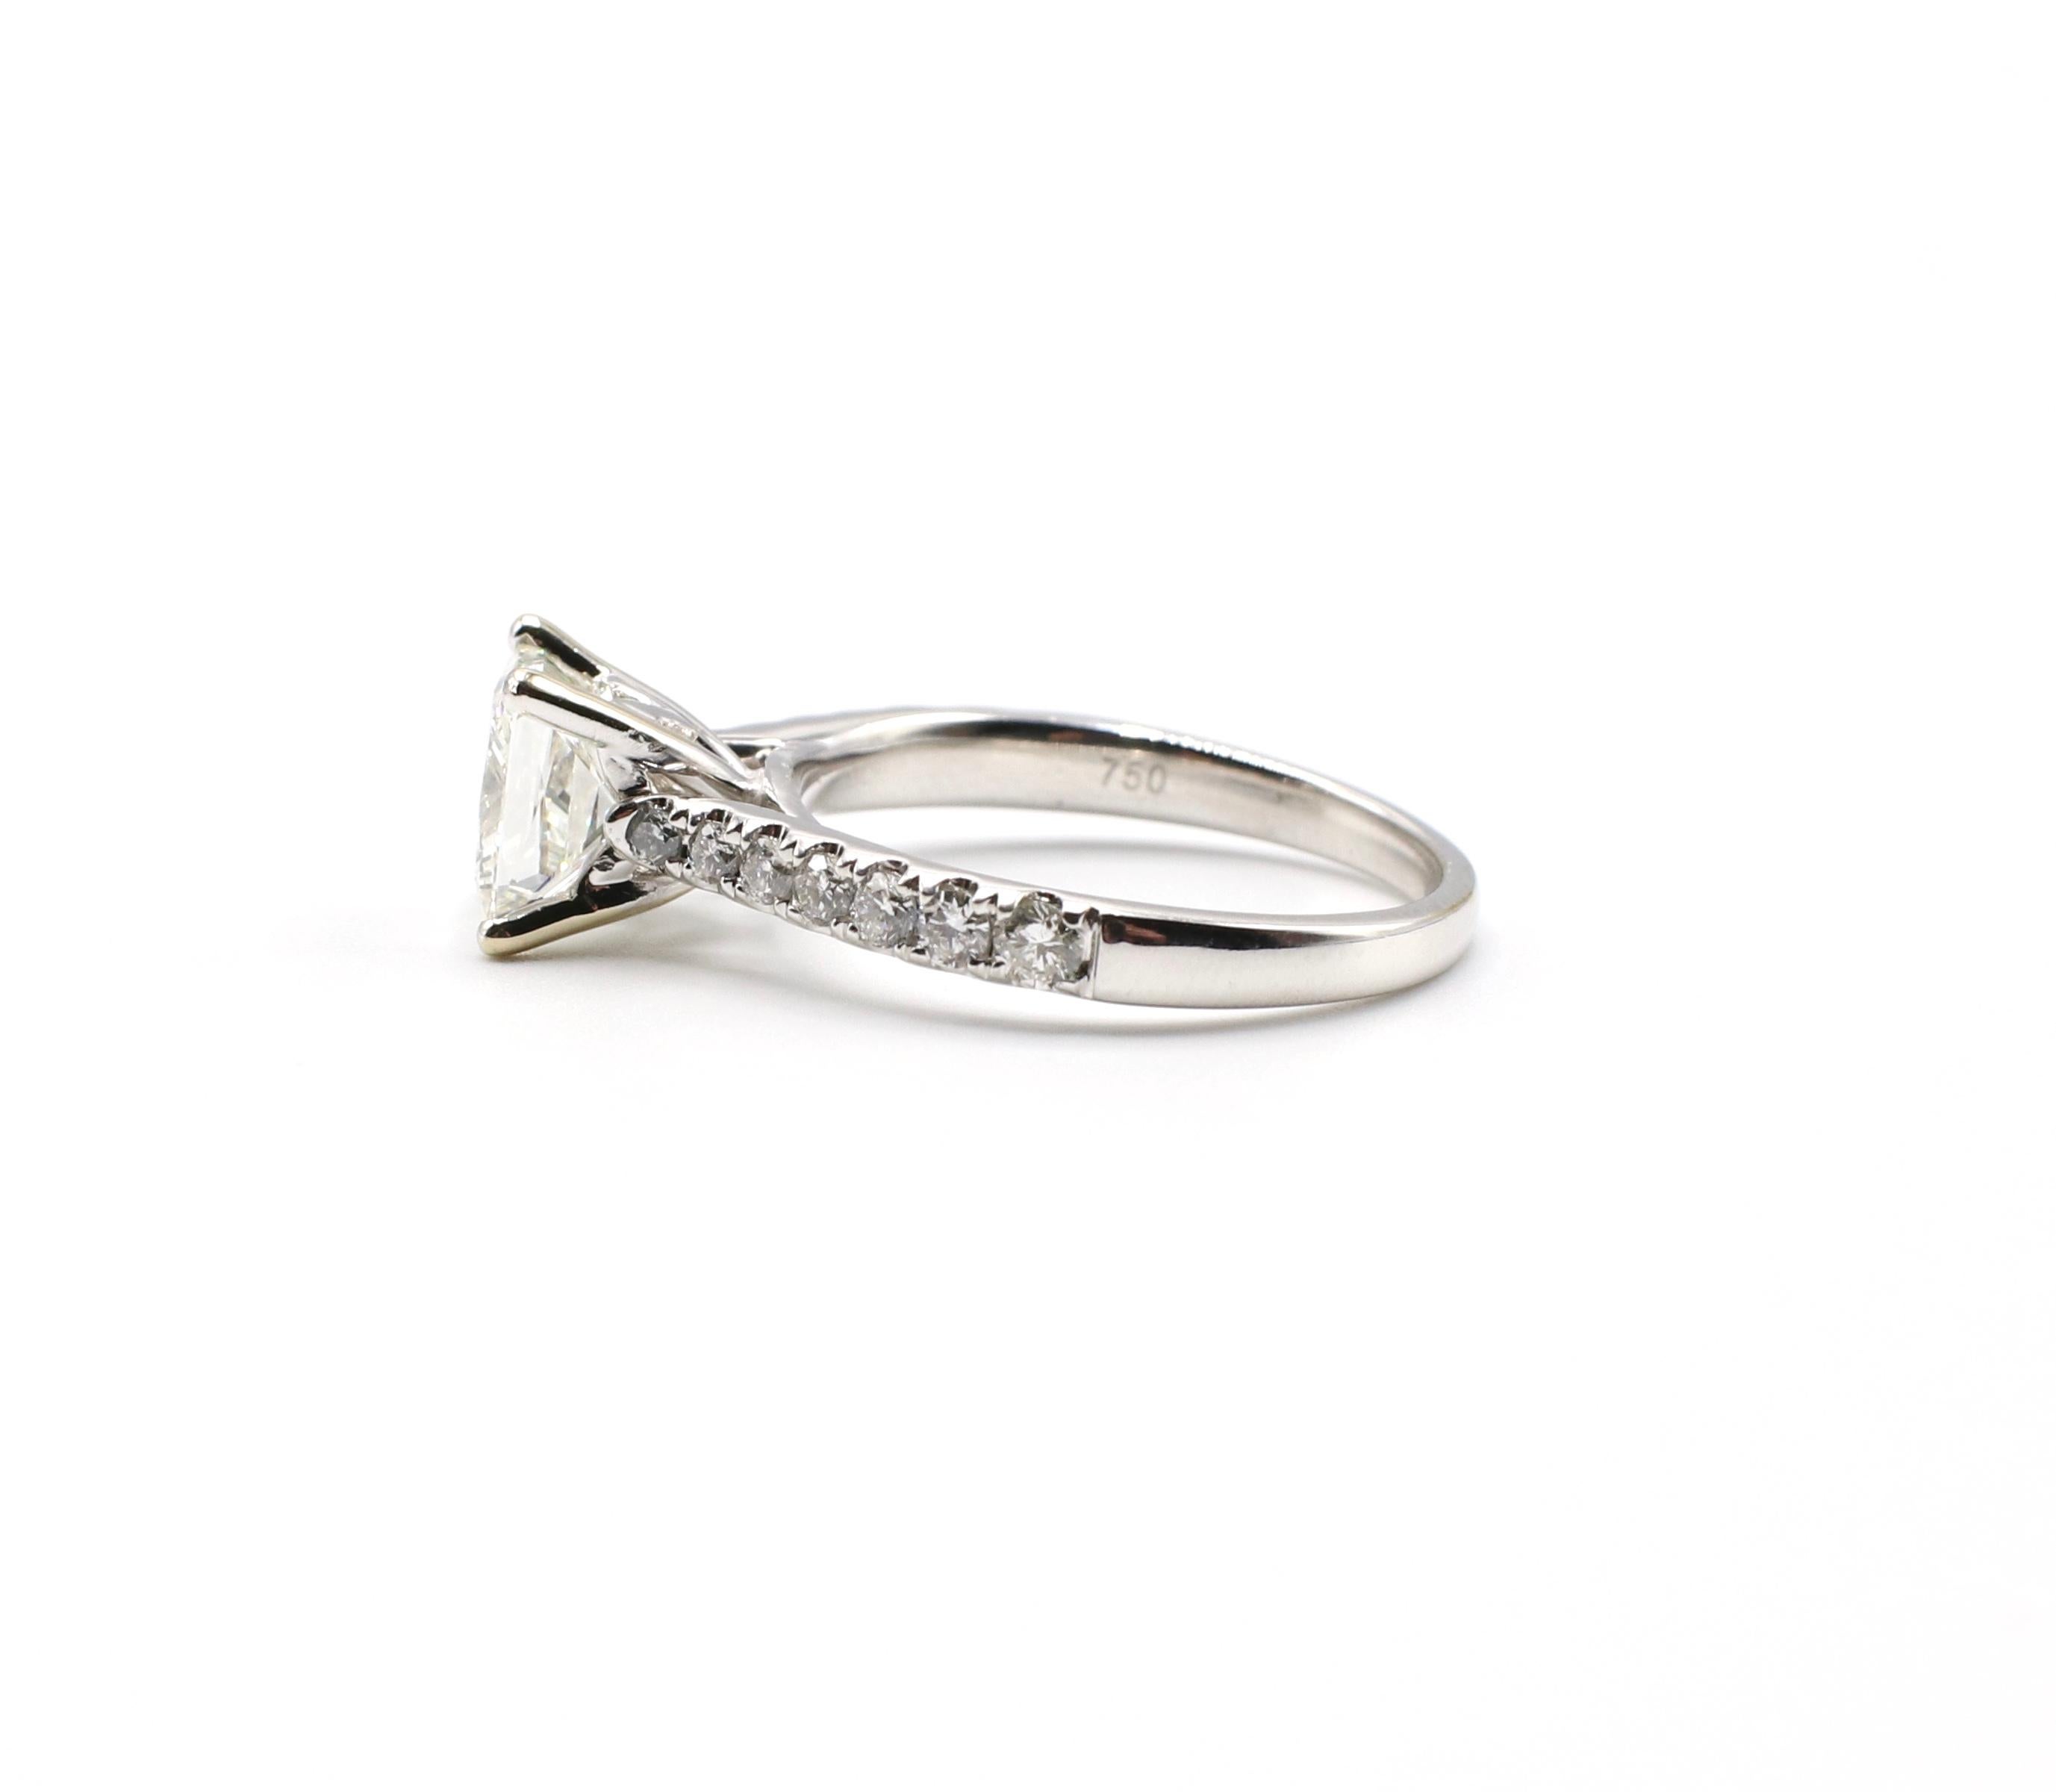 IGI Certified 1.48 Carat I VS1 Princess Cut 18 Karat White Gold Diamond Ring 4